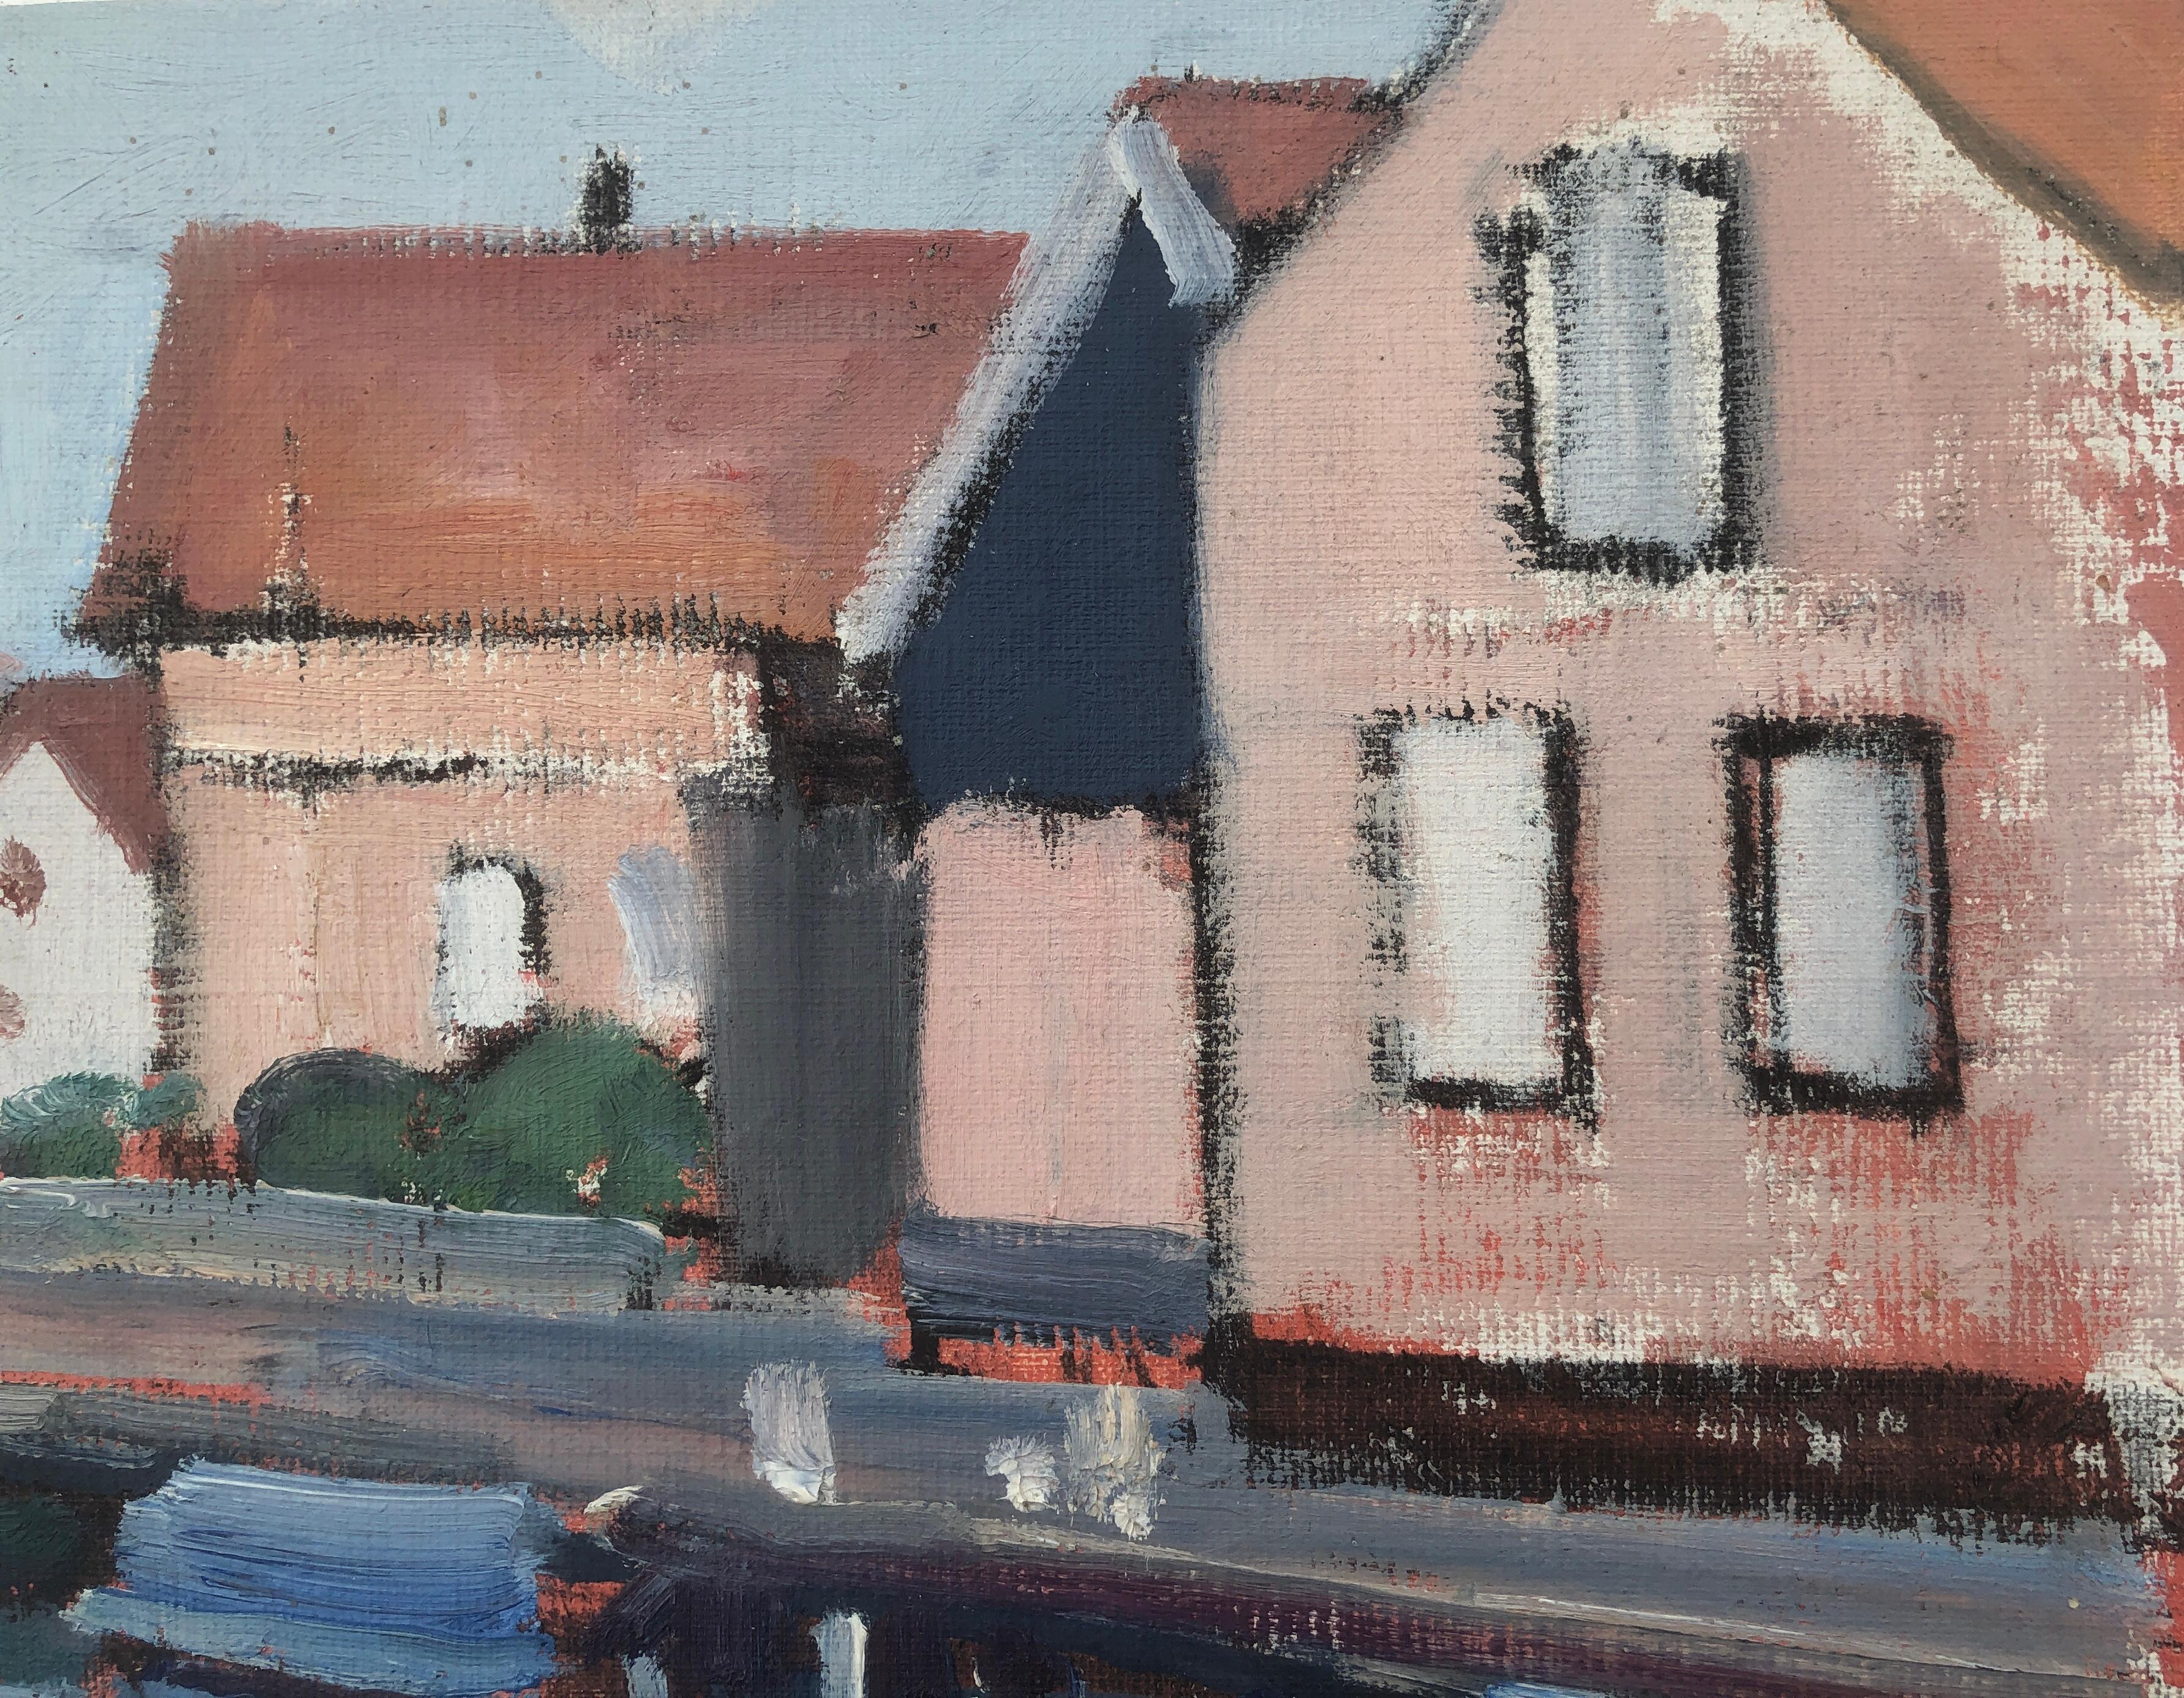 Spakenburg Paesi Bassi pittura ad olio paesaggio marino paesaggio urbano - Painting Postimpressionismo di Rafael Duran Benet